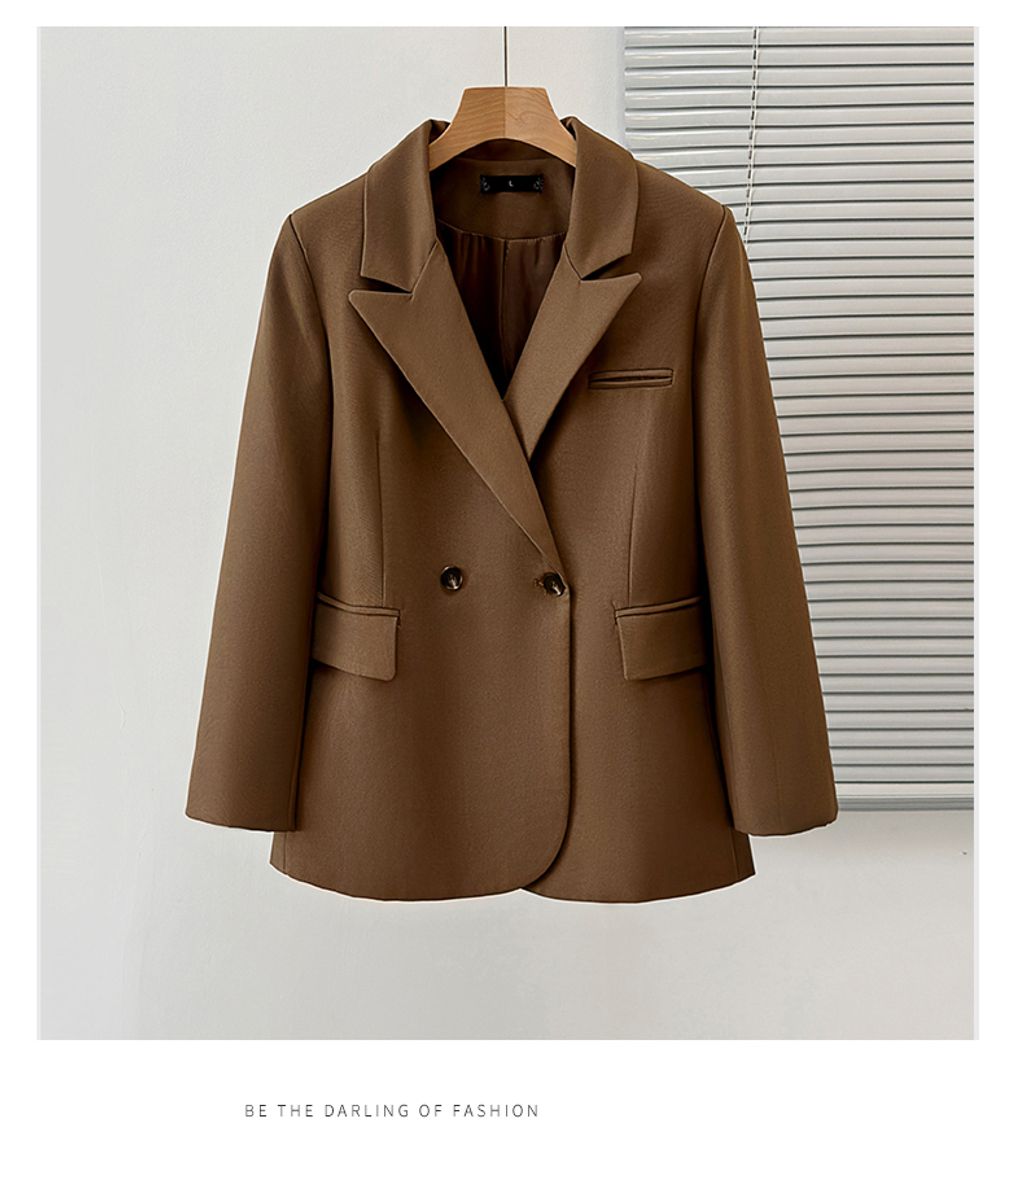 Pure Lust Style Versatile Plus Size Women's Suit Jacket-Brown color